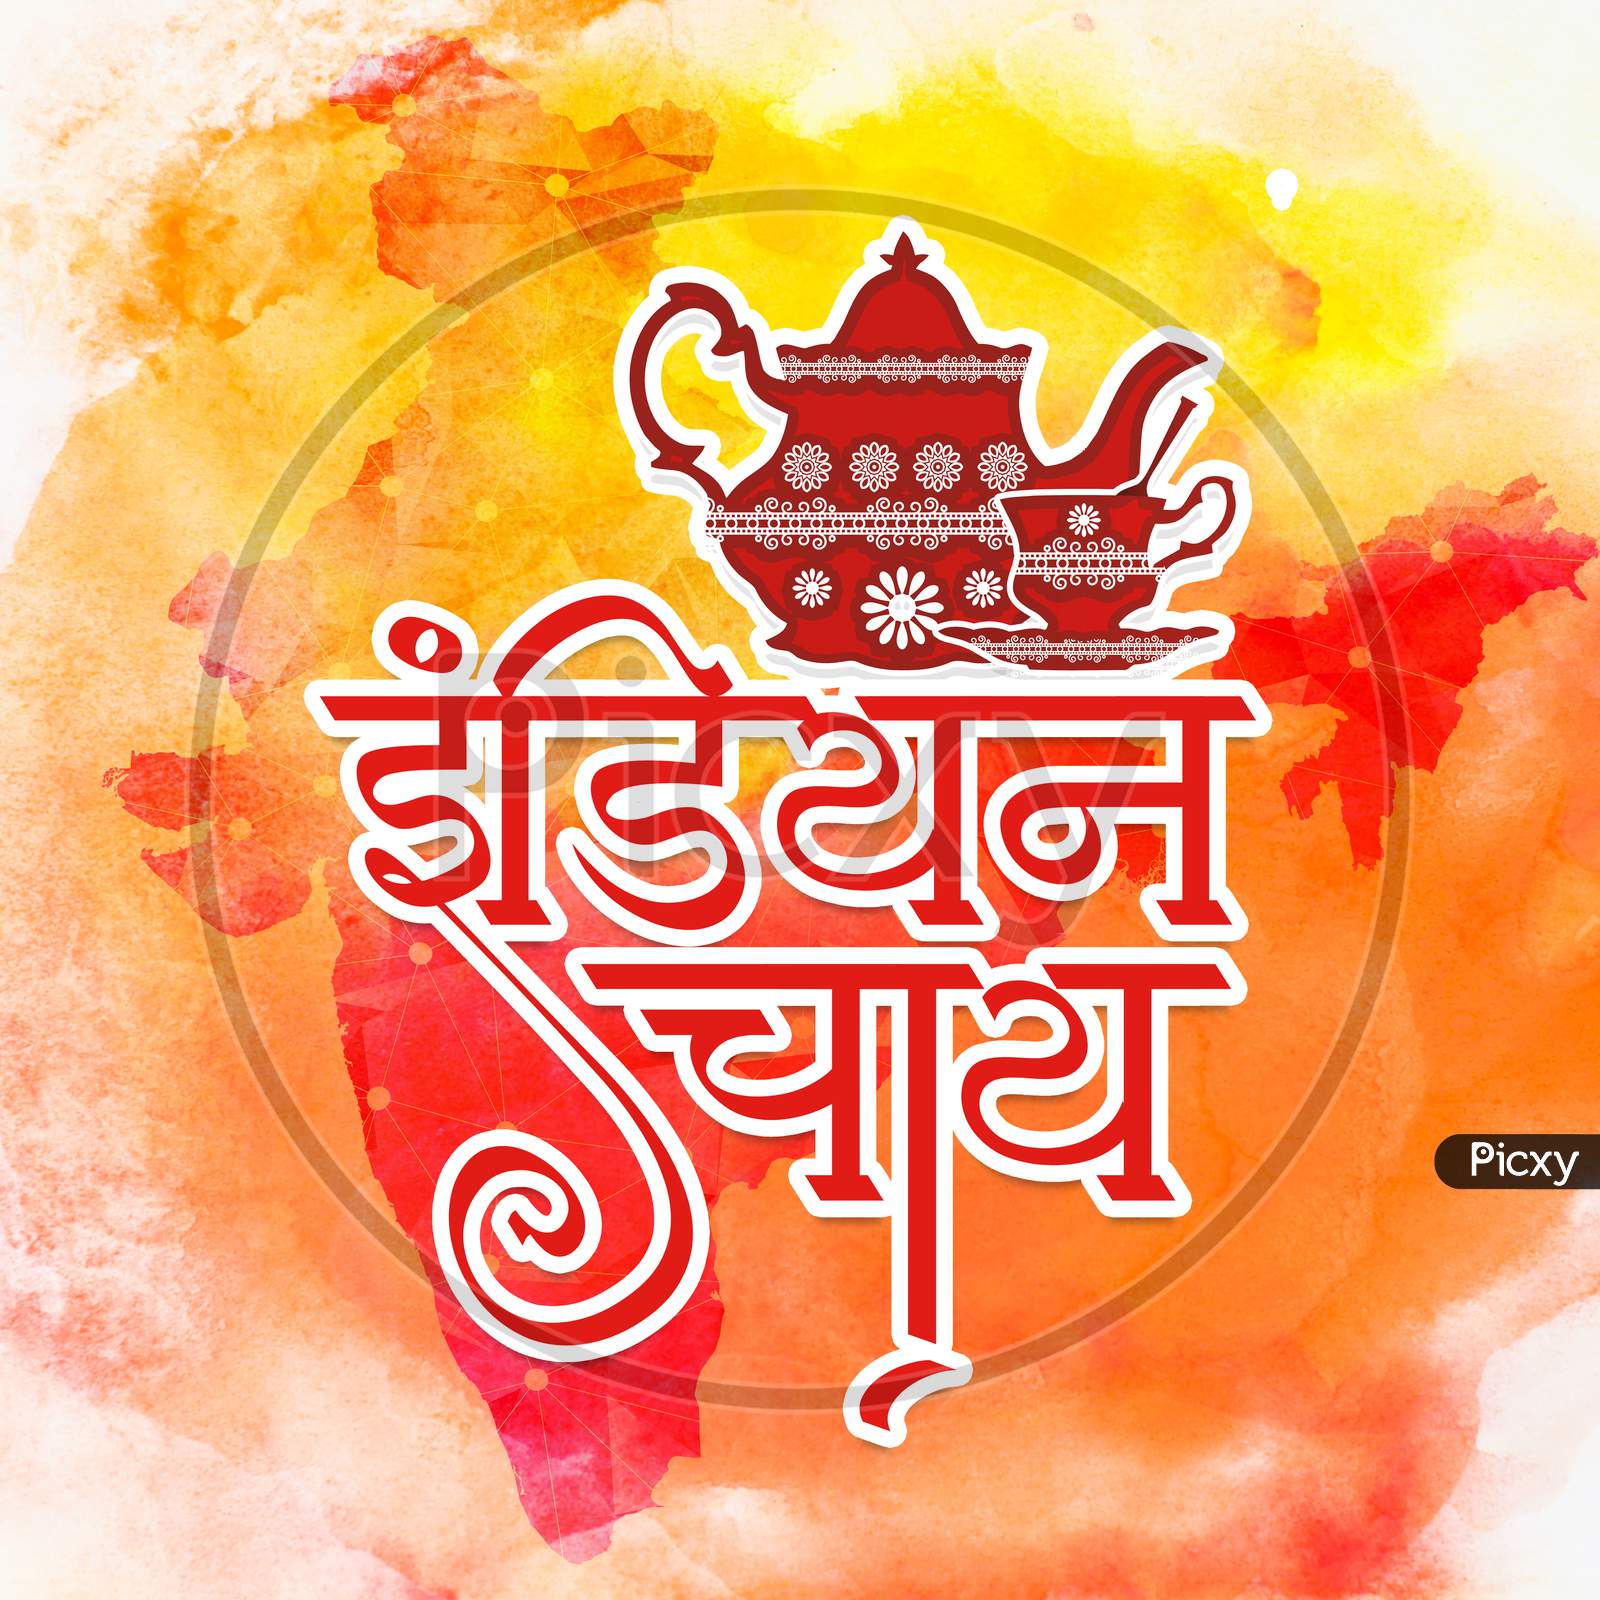 Sangam Logo, Sangam Logo In New Hindi Calligraphy Font, Hindi Alphabet  Typography Art, Indian Logo, Translation - Sangam Stock Photo, Picture and  Royalty Free Image. Image 188929077.